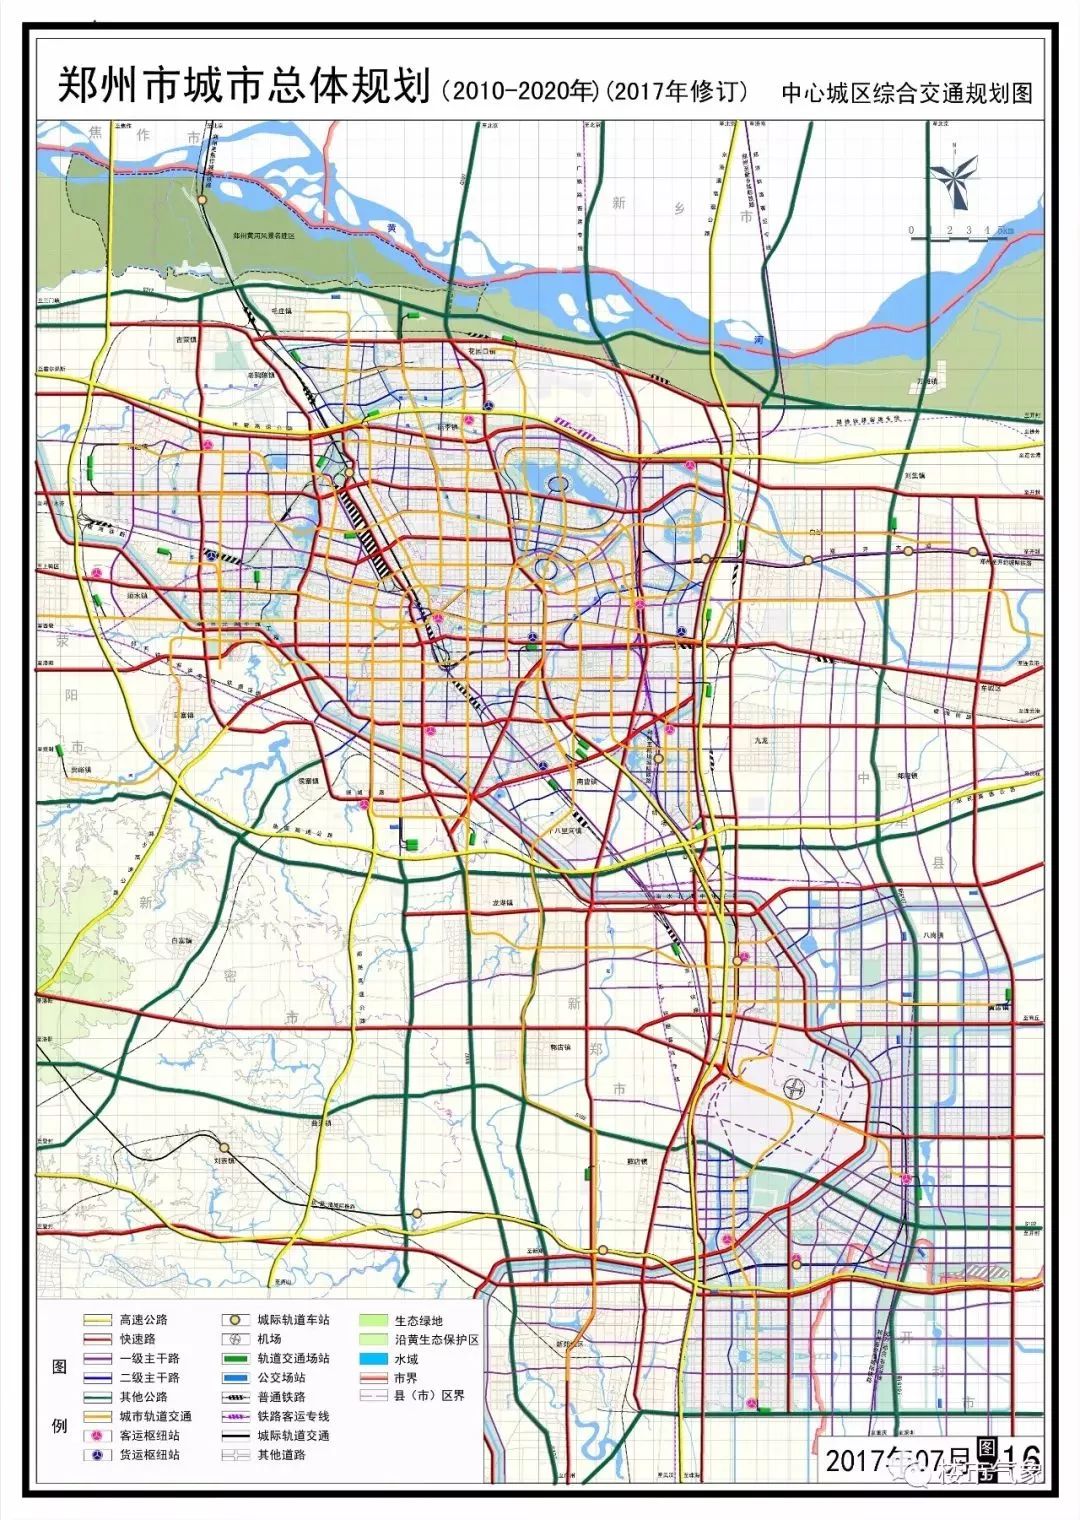 在编制城市总体规划的同时,同步编制郑州市城市综合交通规划,郑州市